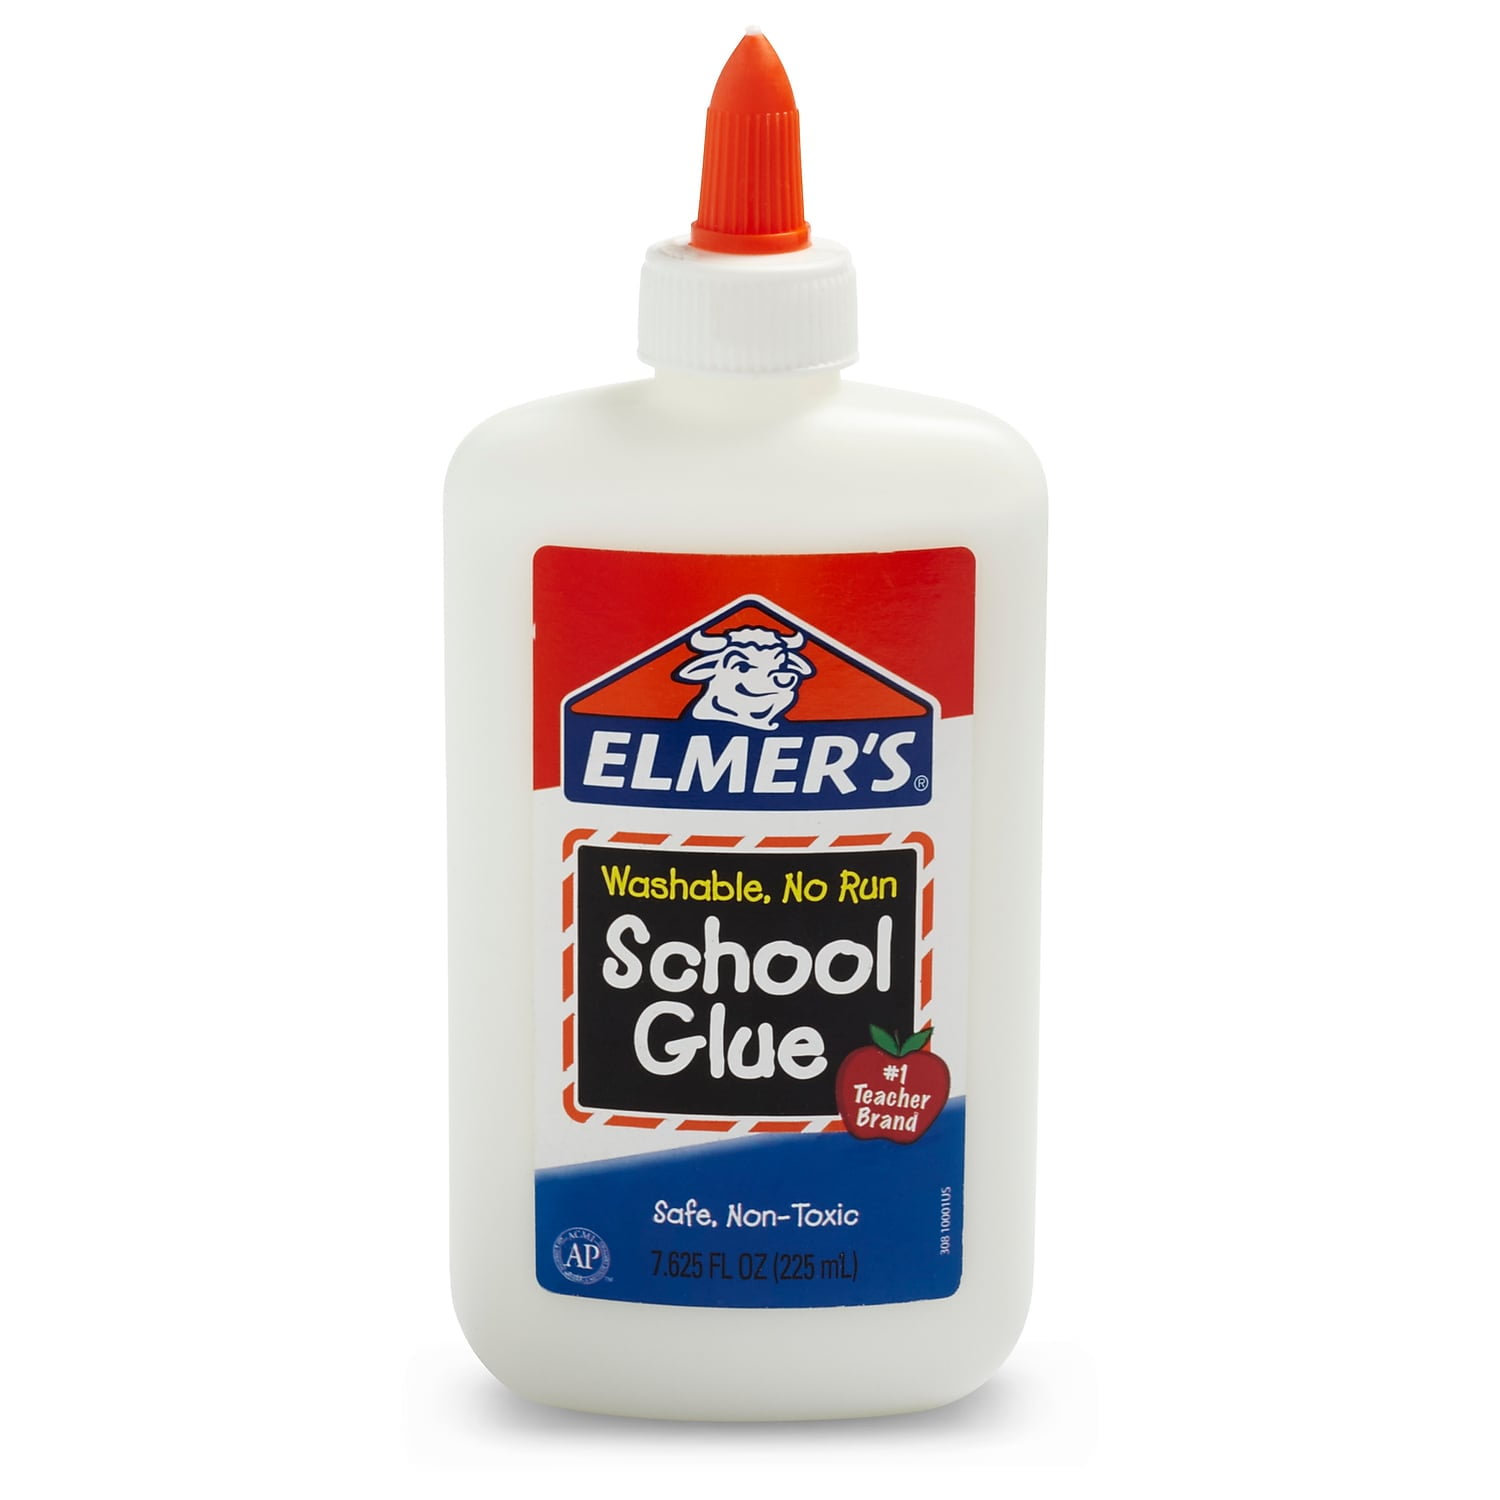 Elmer's Crunchy Slime Activator  Magical Liquid Glue Slime Activator, 8.75  fl. oz. Bottle 